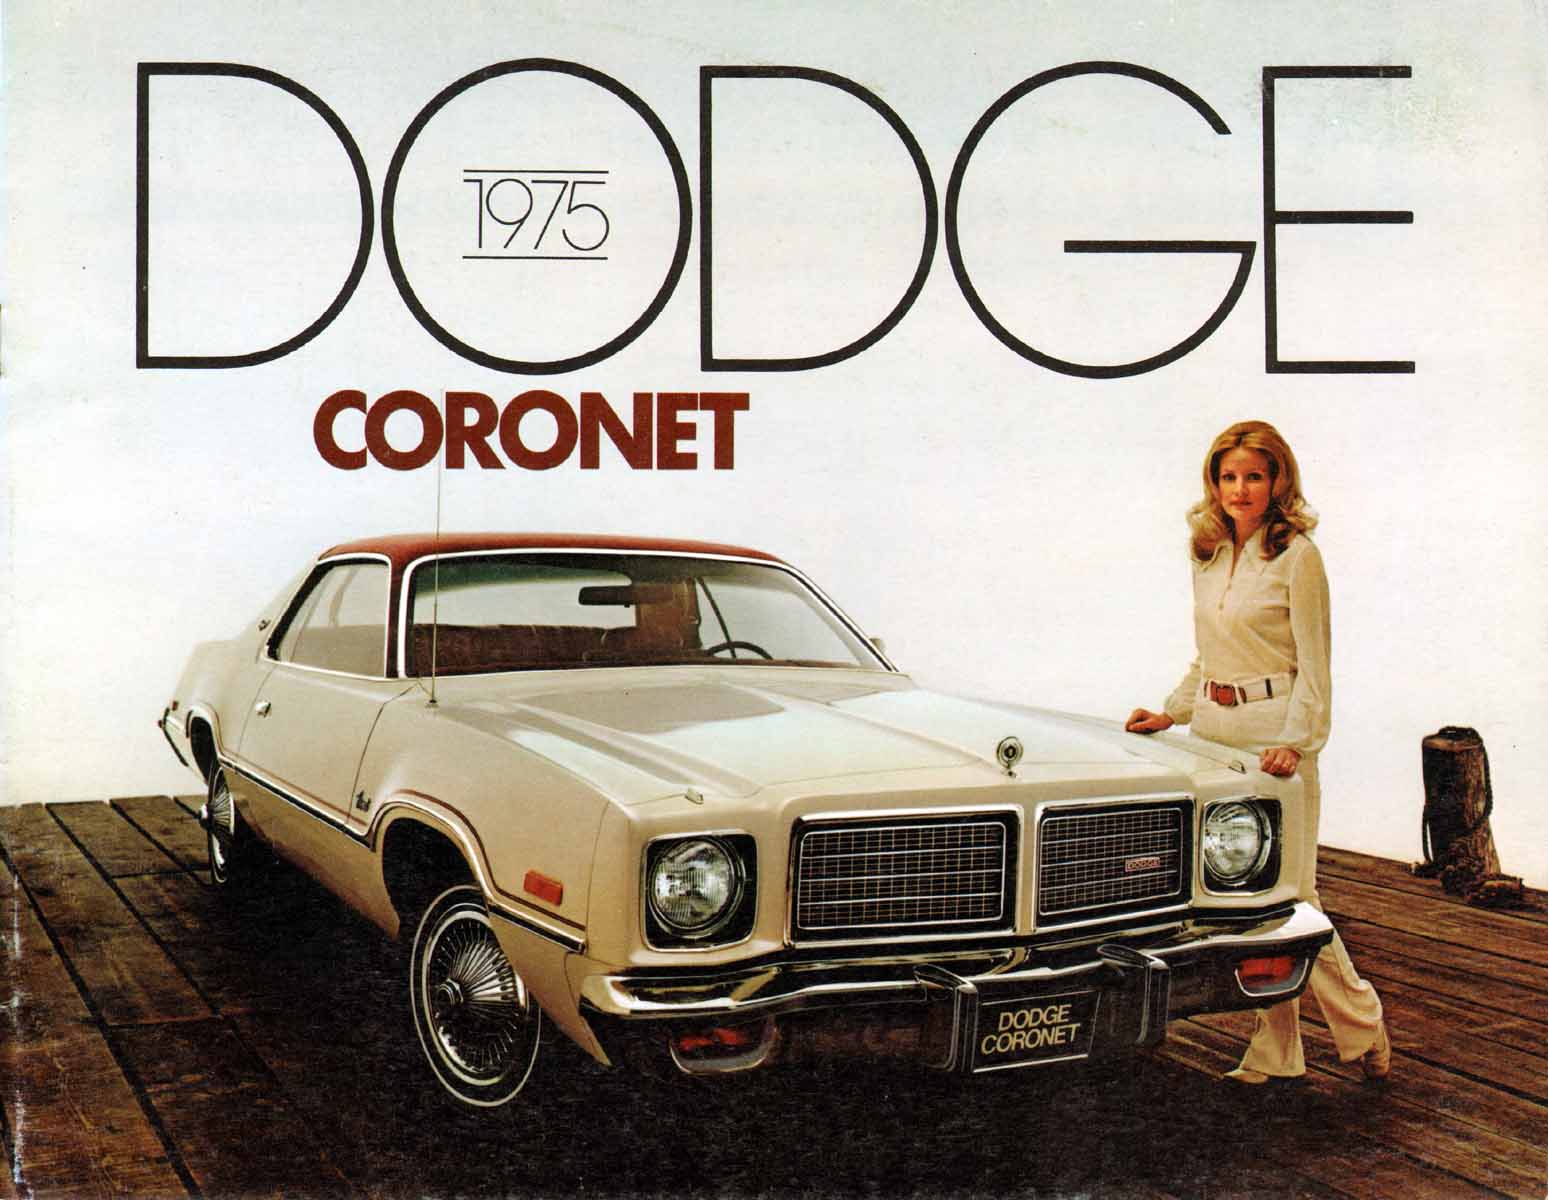 1975_Dodge_Coronet-01